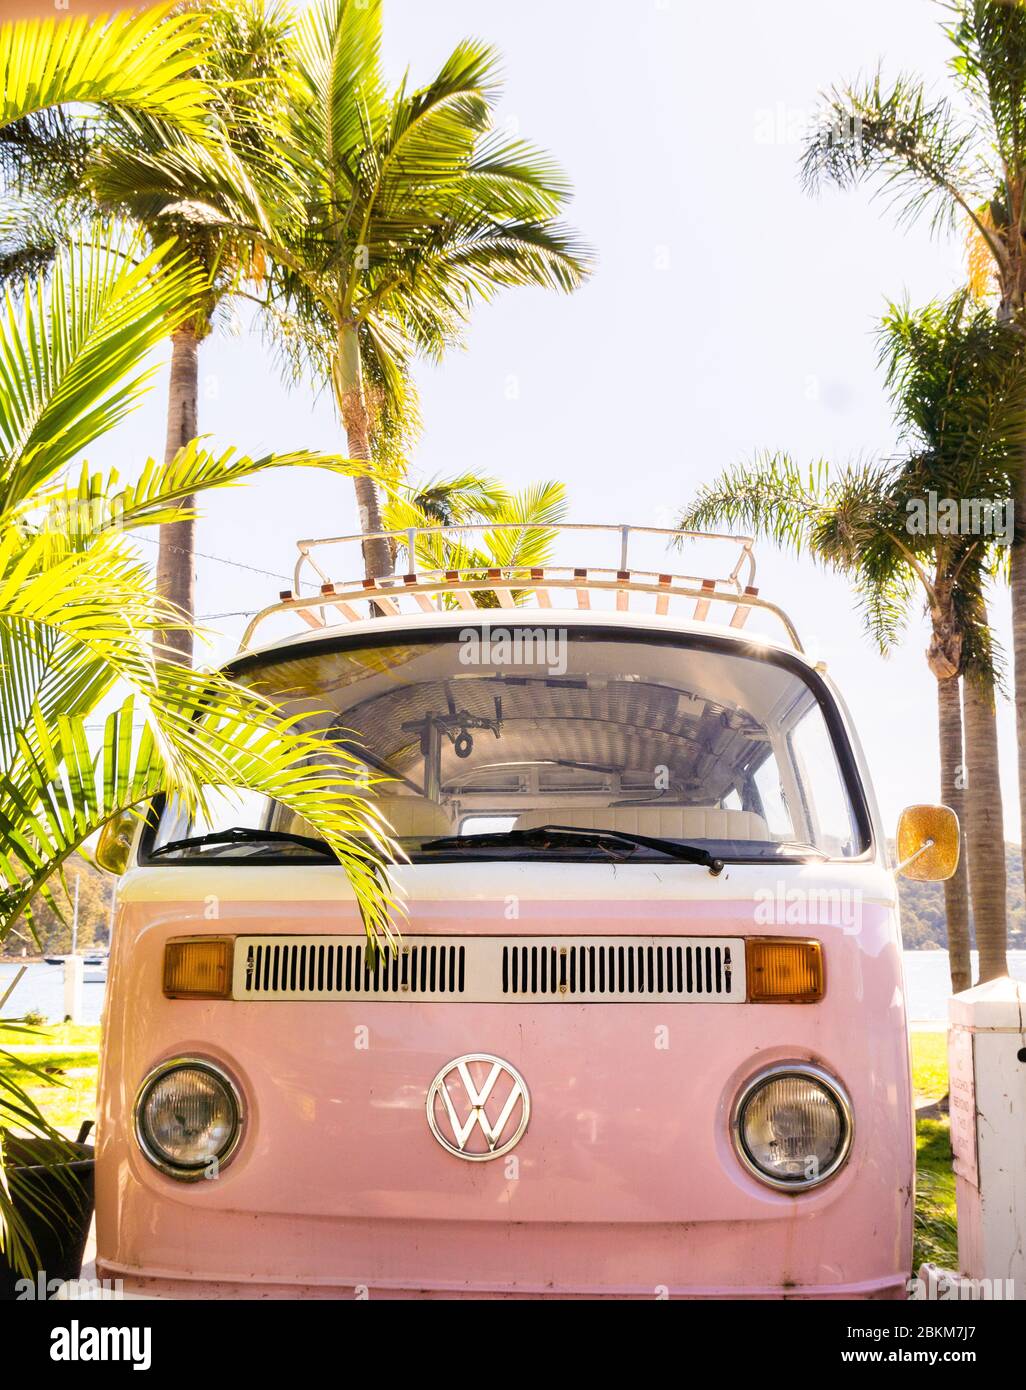 Un campervan rose VW garé à côté des palmiers Photo Stock - Alamy